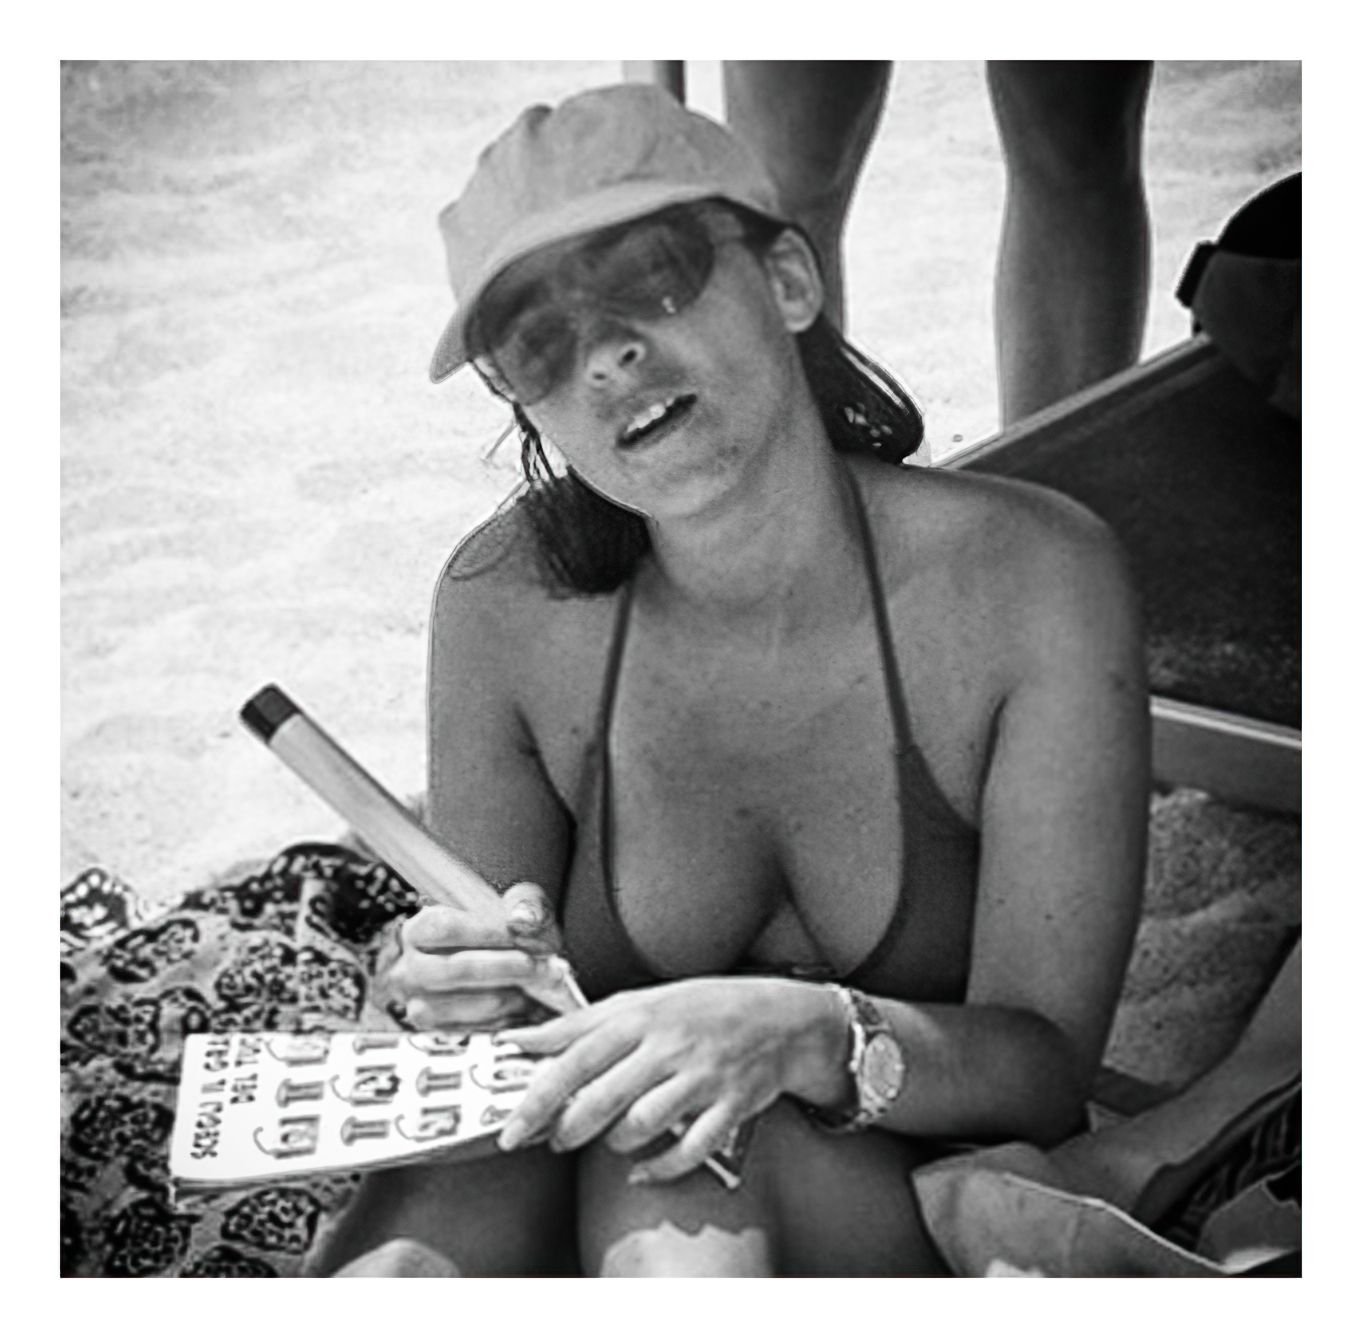 Camila Raznovich Nude & Sexy (64 Photos)